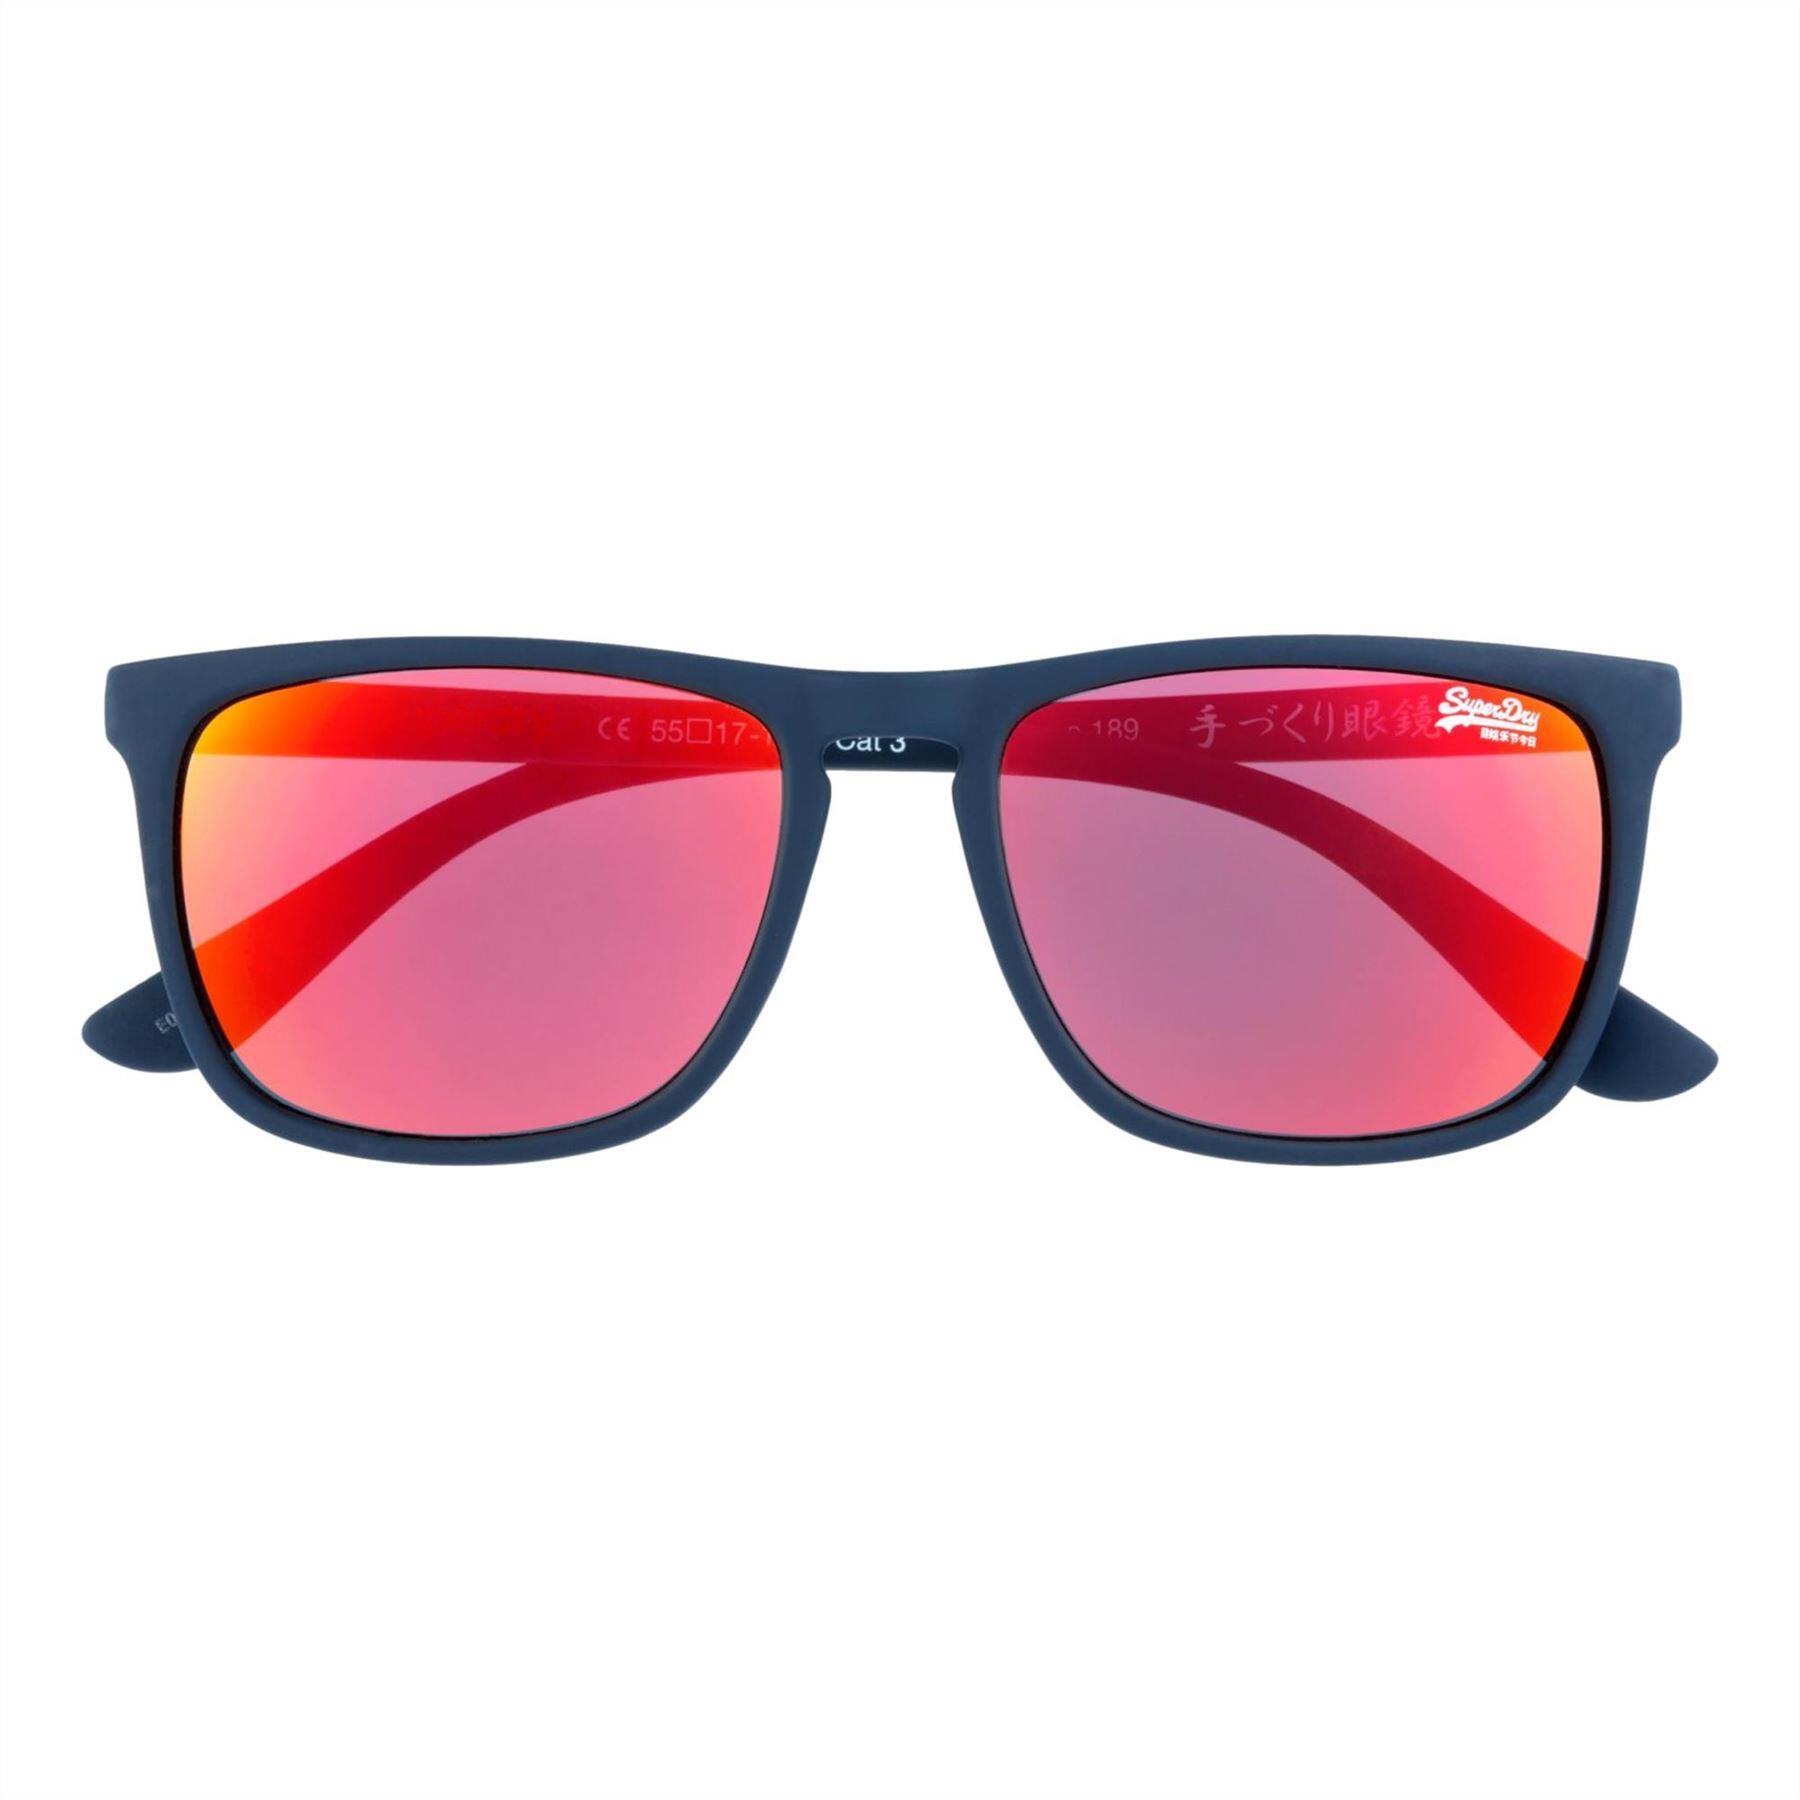 SUPERDRY Superdry Shockwave Sunglasses - Blue